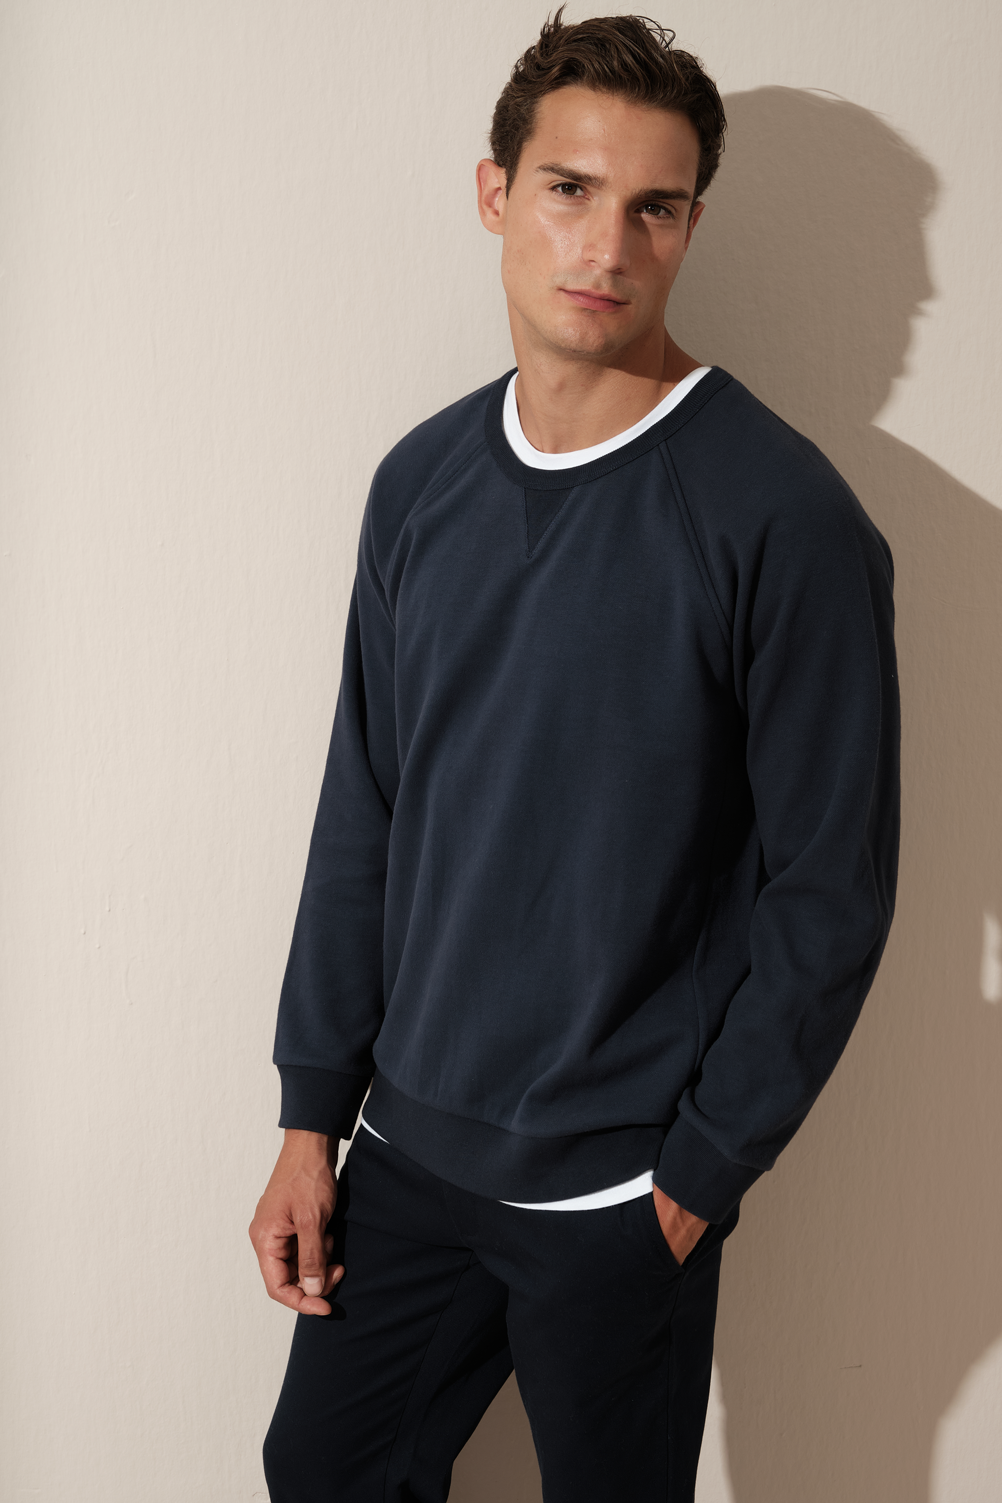 &quot;All-American&quot; Unisex Raglan Sweatshirt in Brushed Interlock Cotton